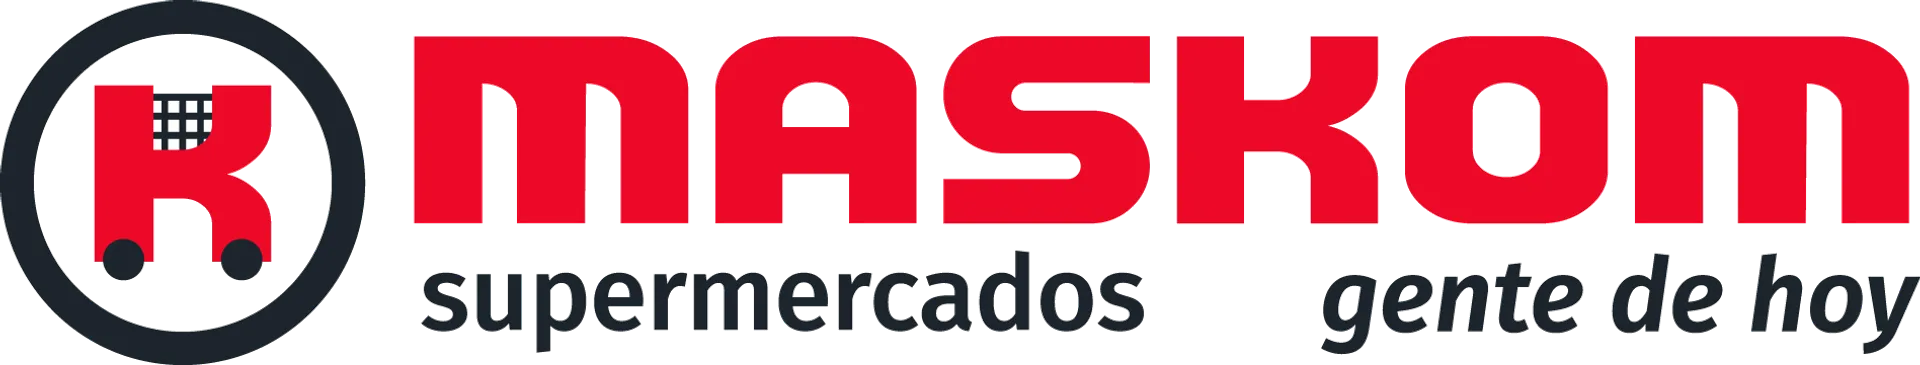 MASKOM SUPERMERCADOS logo